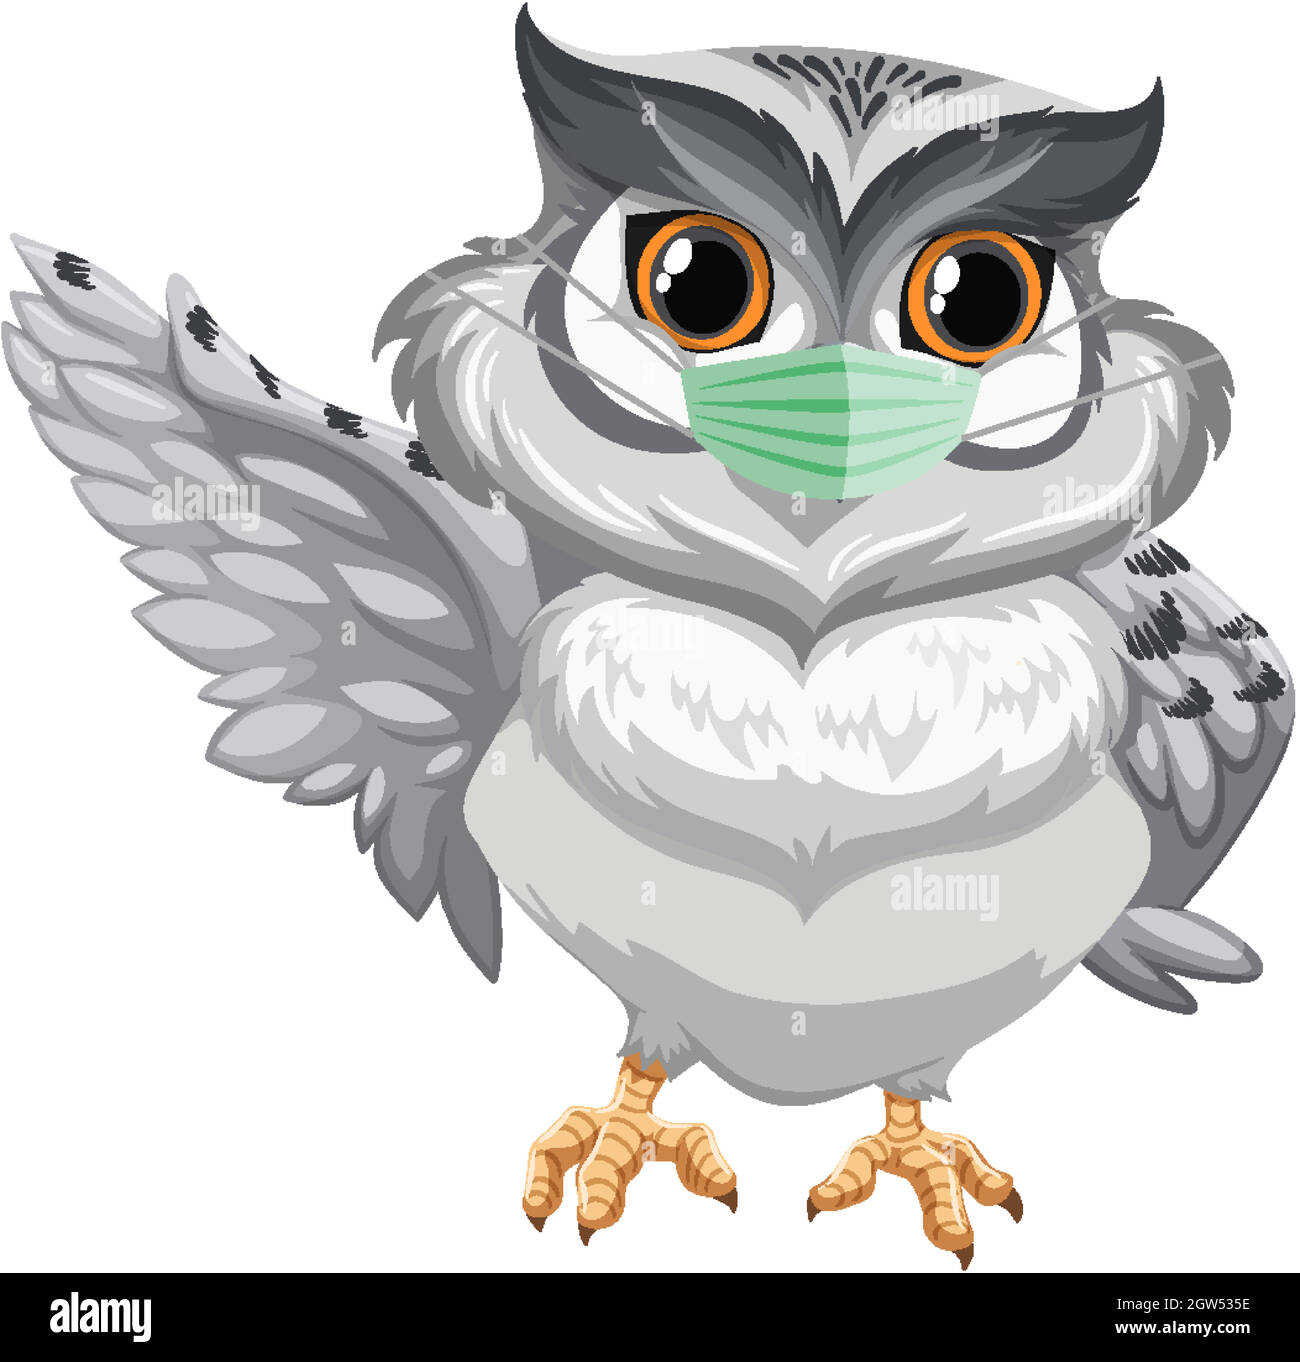 Masque de port de personnage de dessin animé Owl Illustration de Vecteur